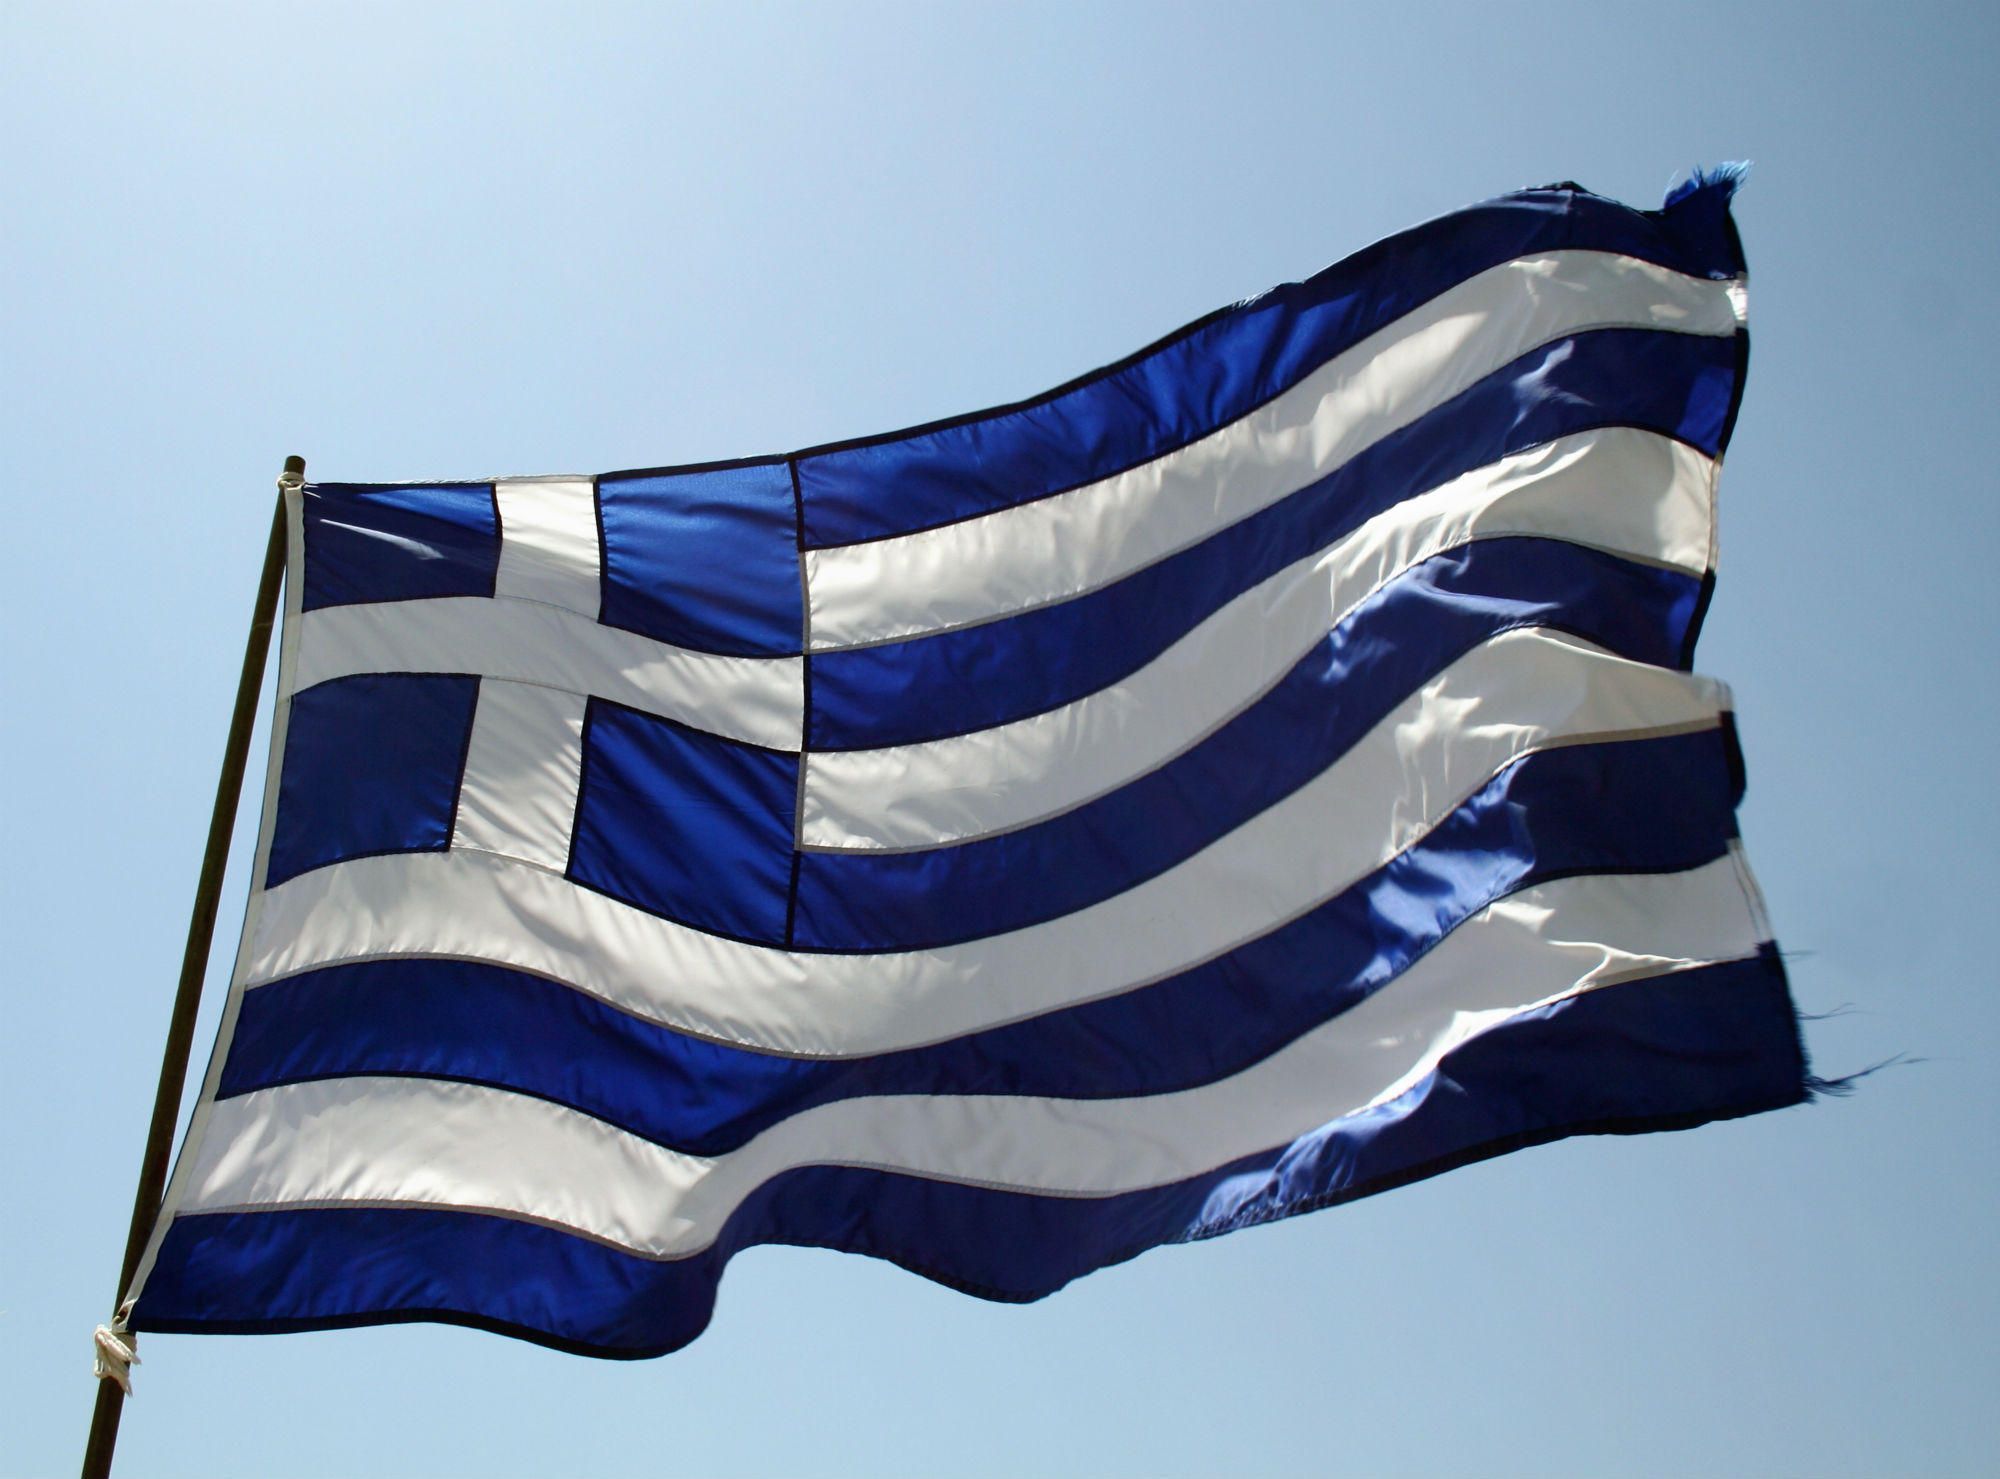 Μάτι: Ύψωσαν ελληνική σημαία σε κατεστραμμένο σπίτι (φωτο)